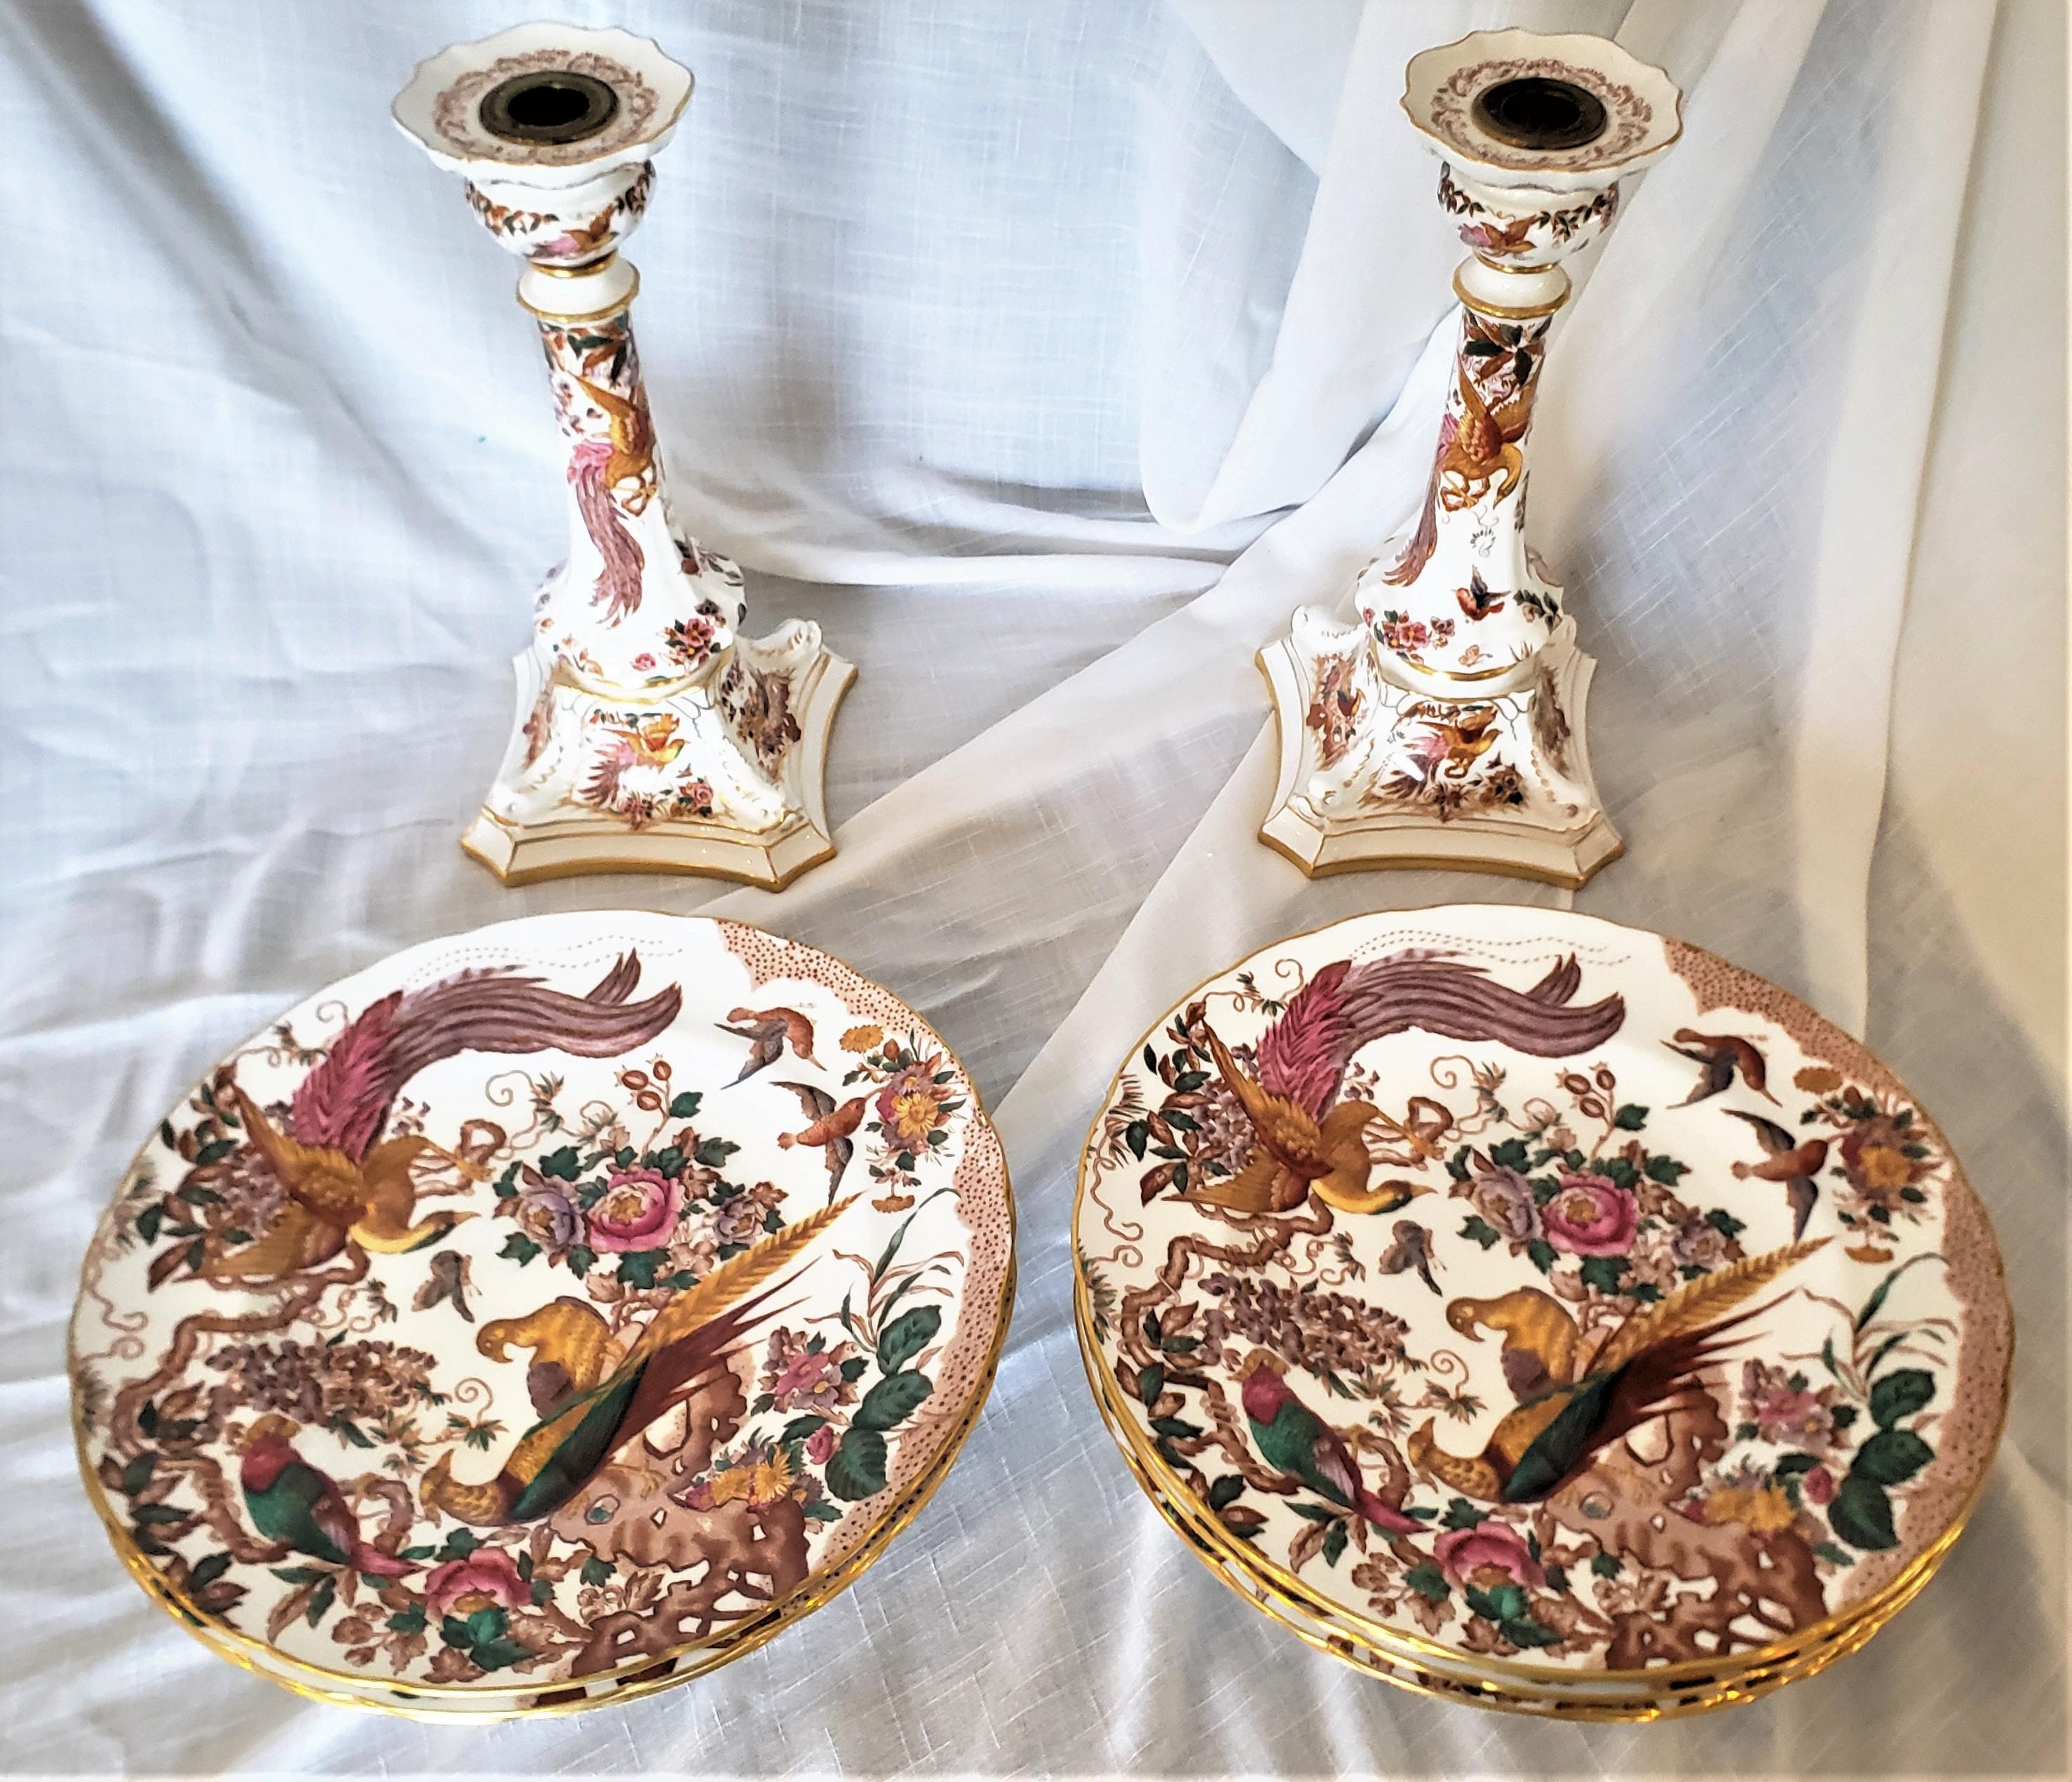 Ces grands chandeliers et ces assiettes ont été fabriqués par le célèbre porcelainier anglais, Royal Crown Derby. Les chandeliers et les assiettes sont réalisés dans leur motif 